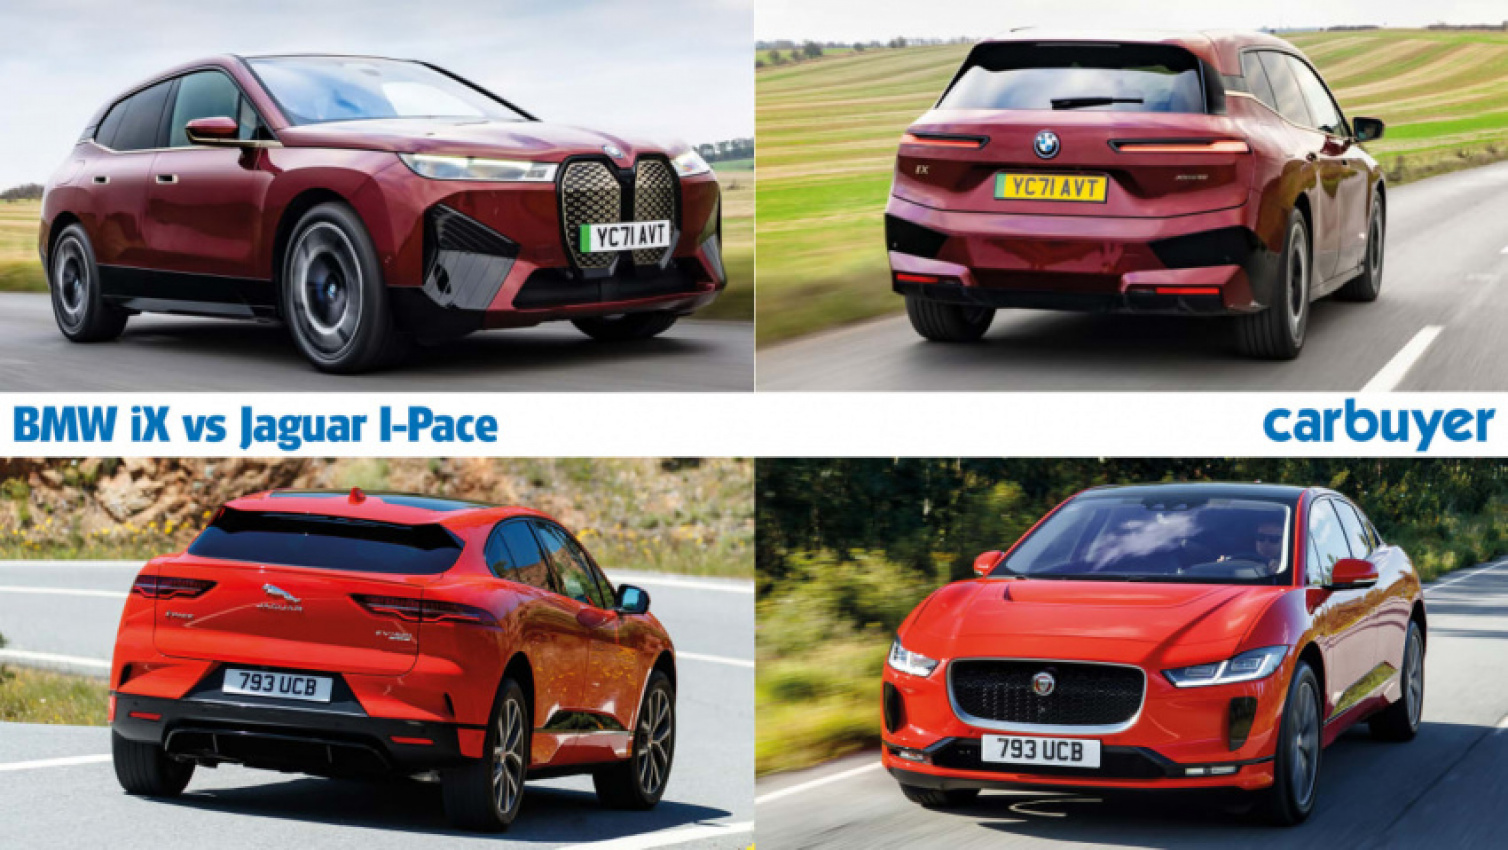 autos, bmw, cars, jaguar, reviews, compare cars, electric cars, i-pace, bmw ix vs jaguar i-pace: which should you buy?